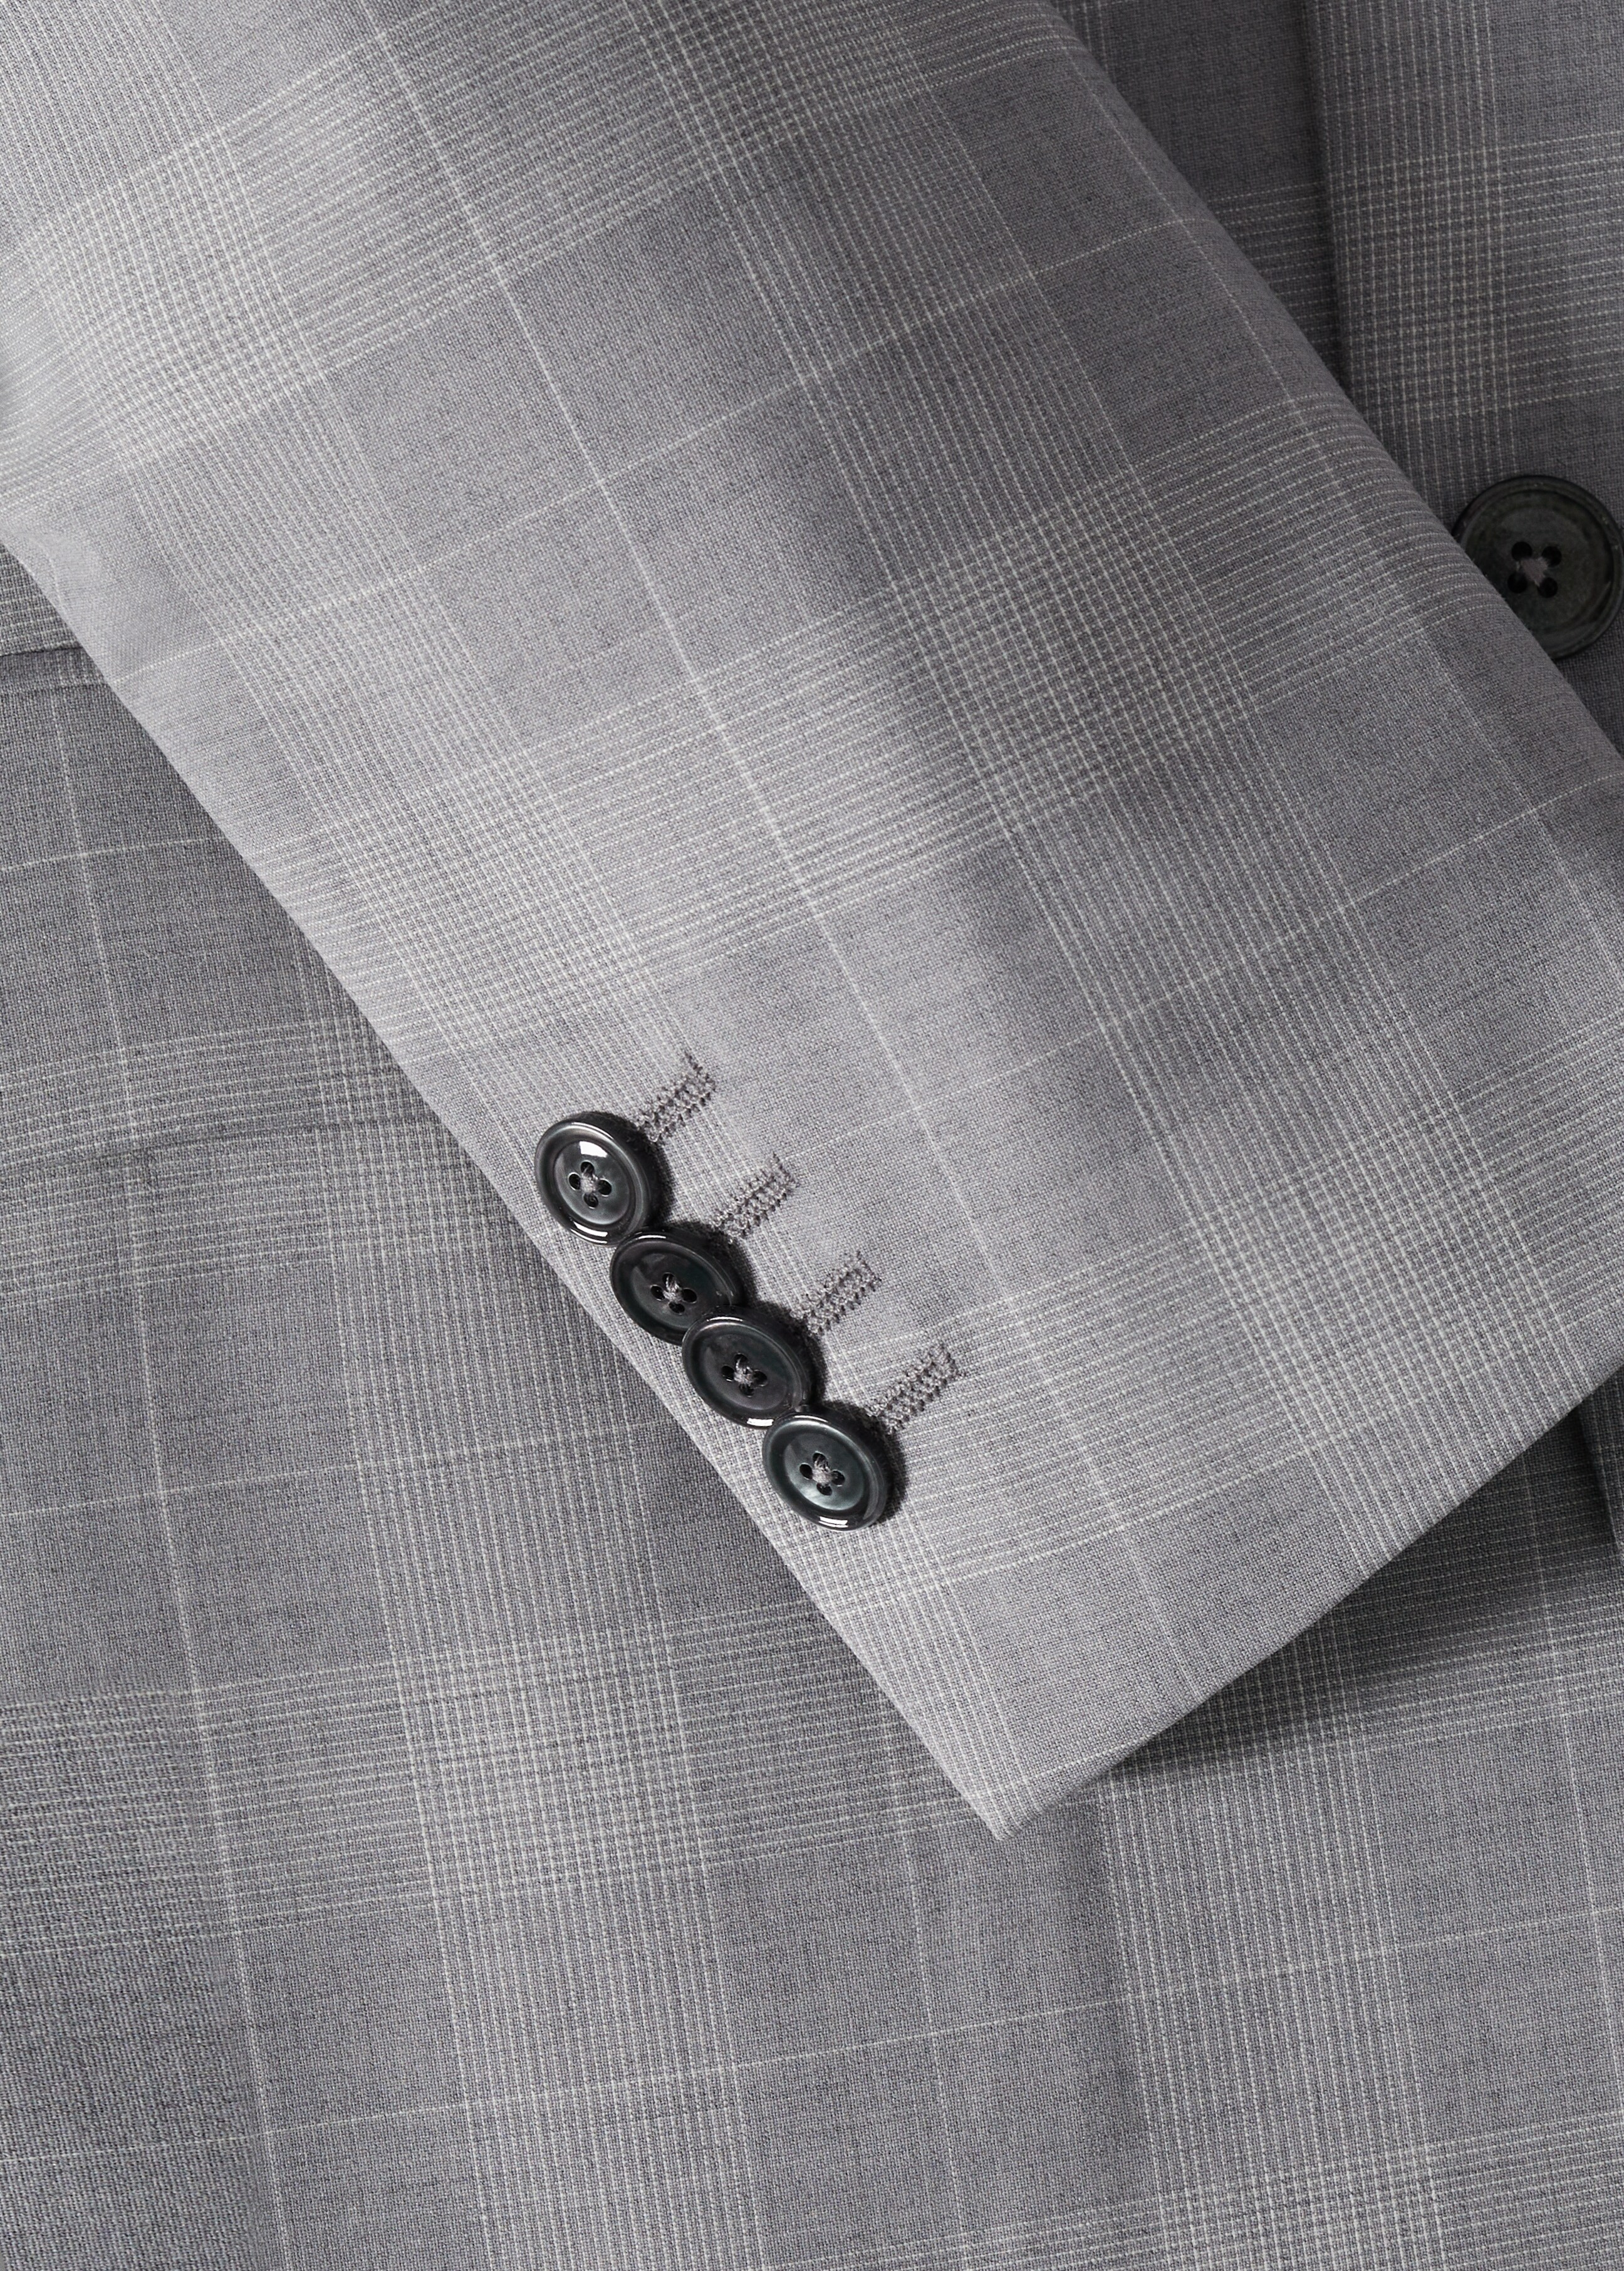 Lněné oblekové sako slim fit s kostkou - Detail zboží 7